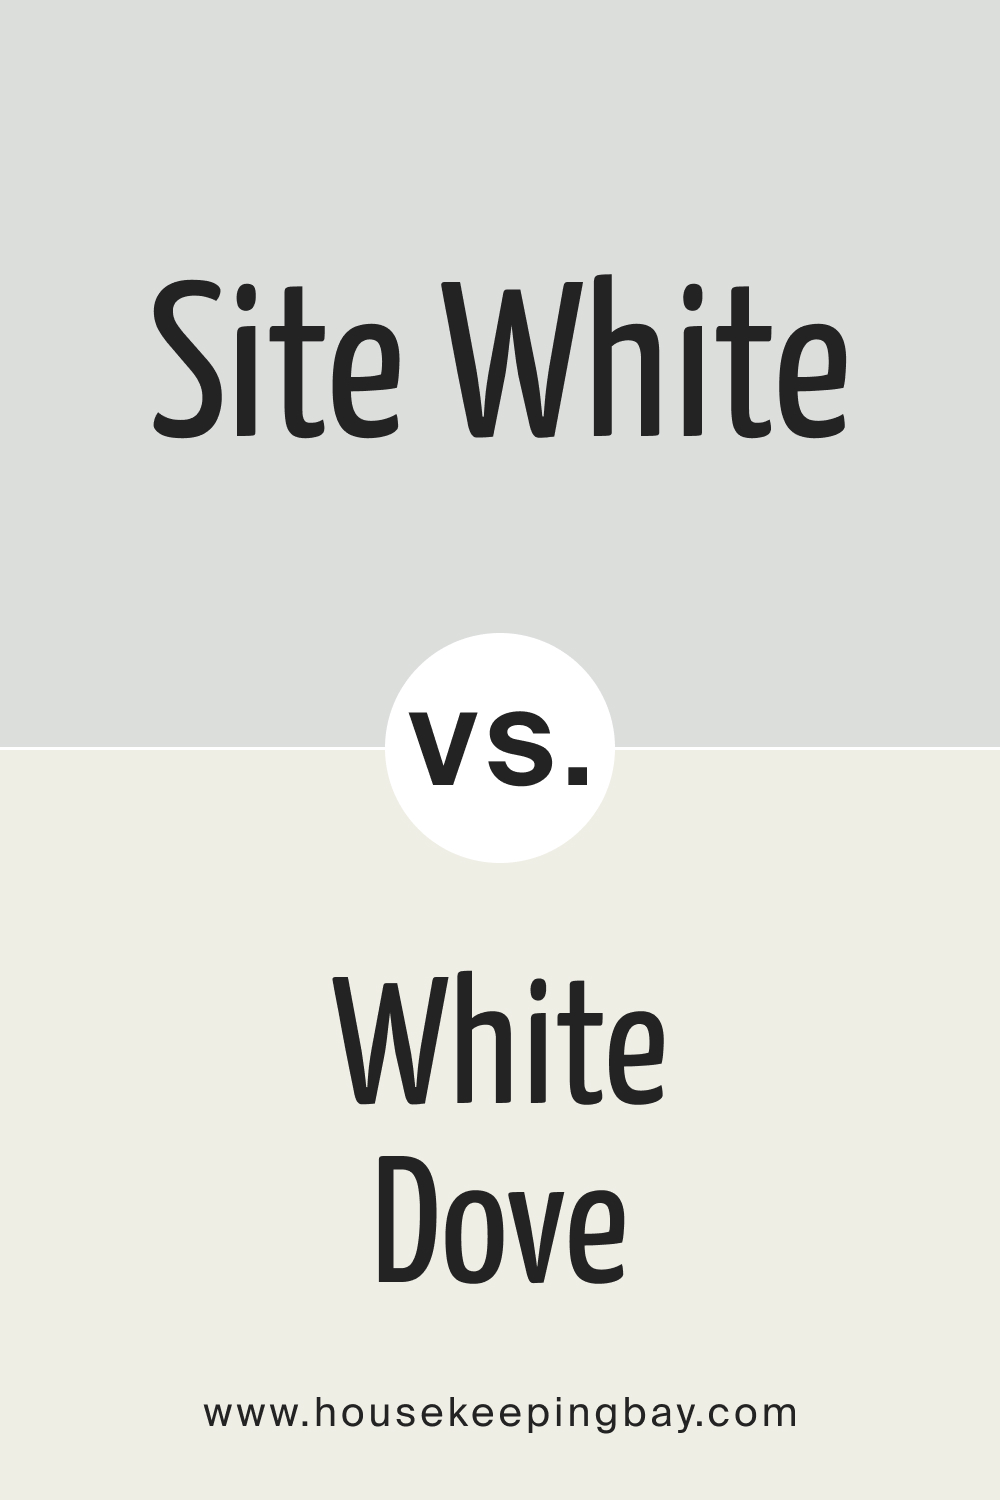 SW Site White vs White Dove OC 17